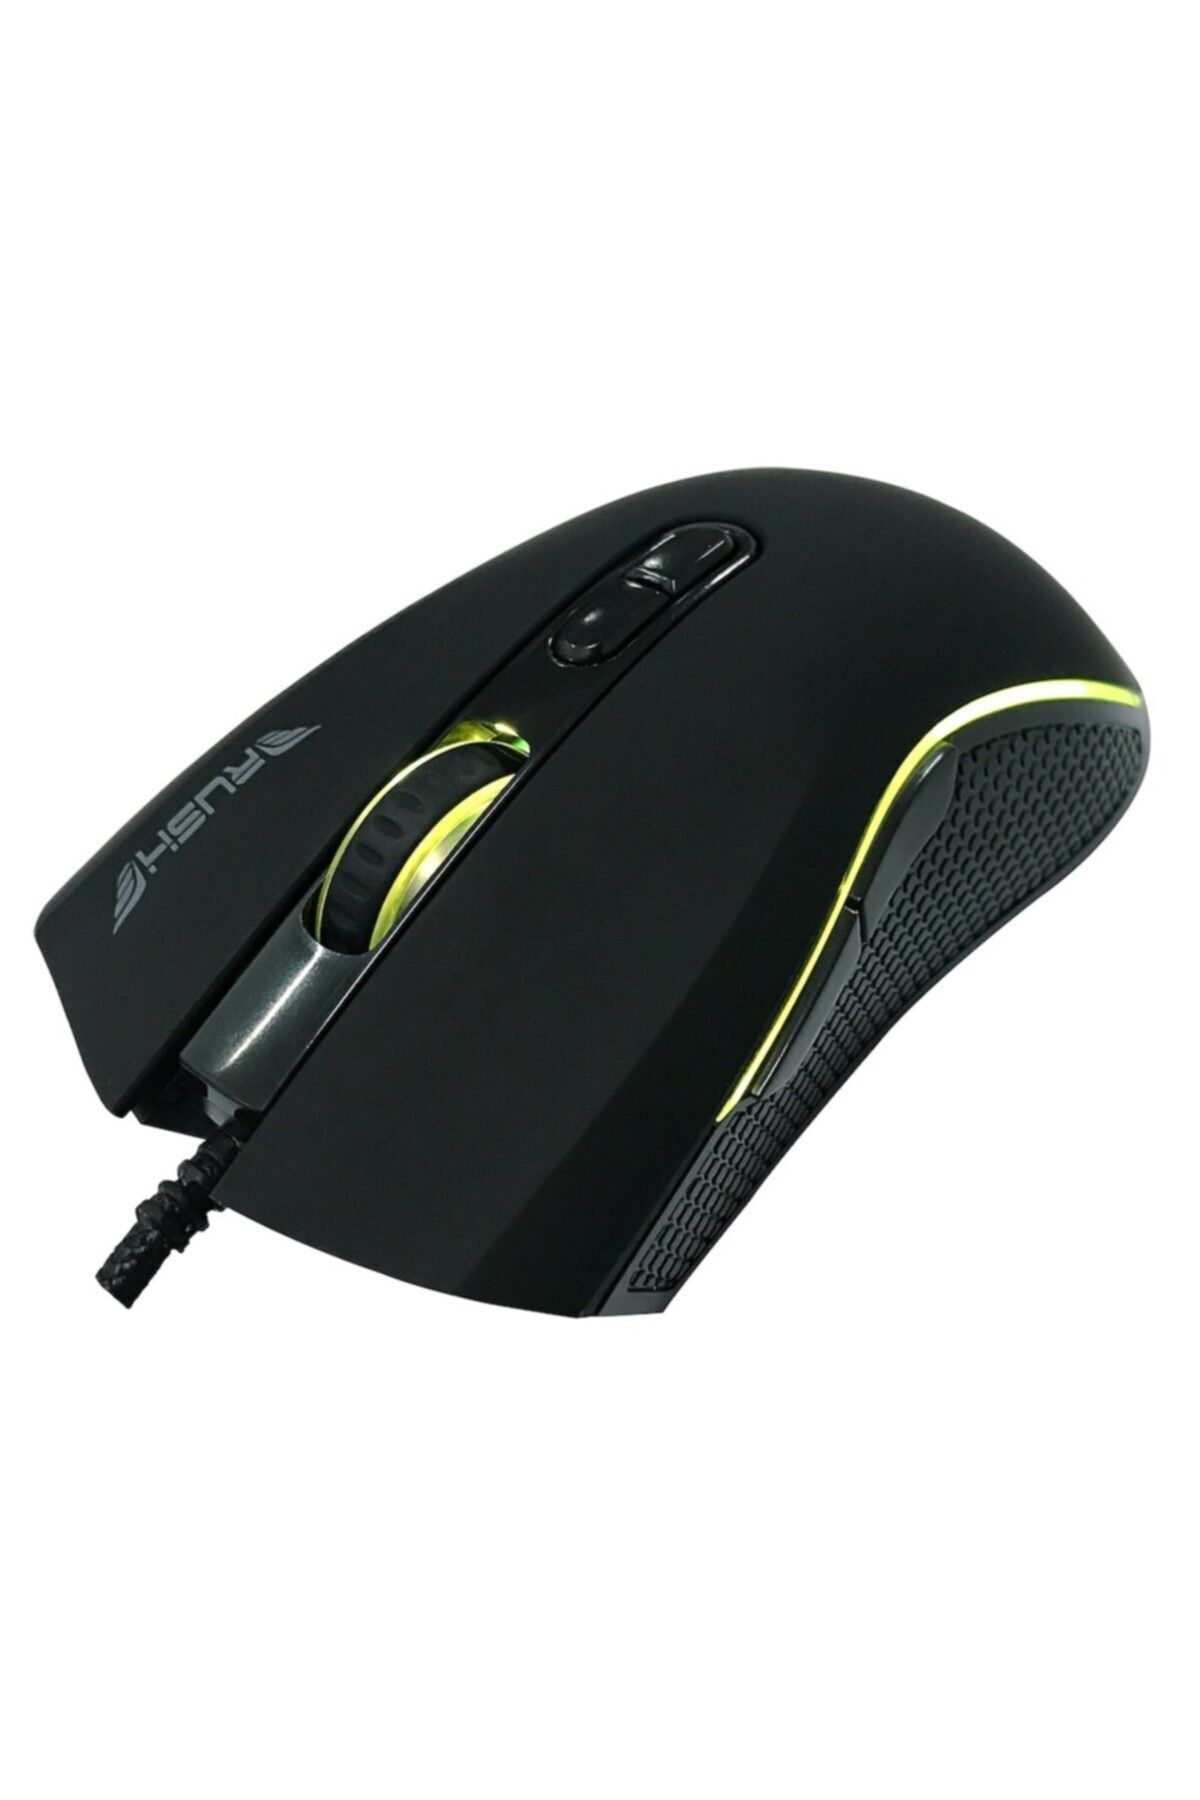 Rush Gallop Rm44 12.800 Dpı Rgb Makrolu Pro Gaming Oyuncu Mouse